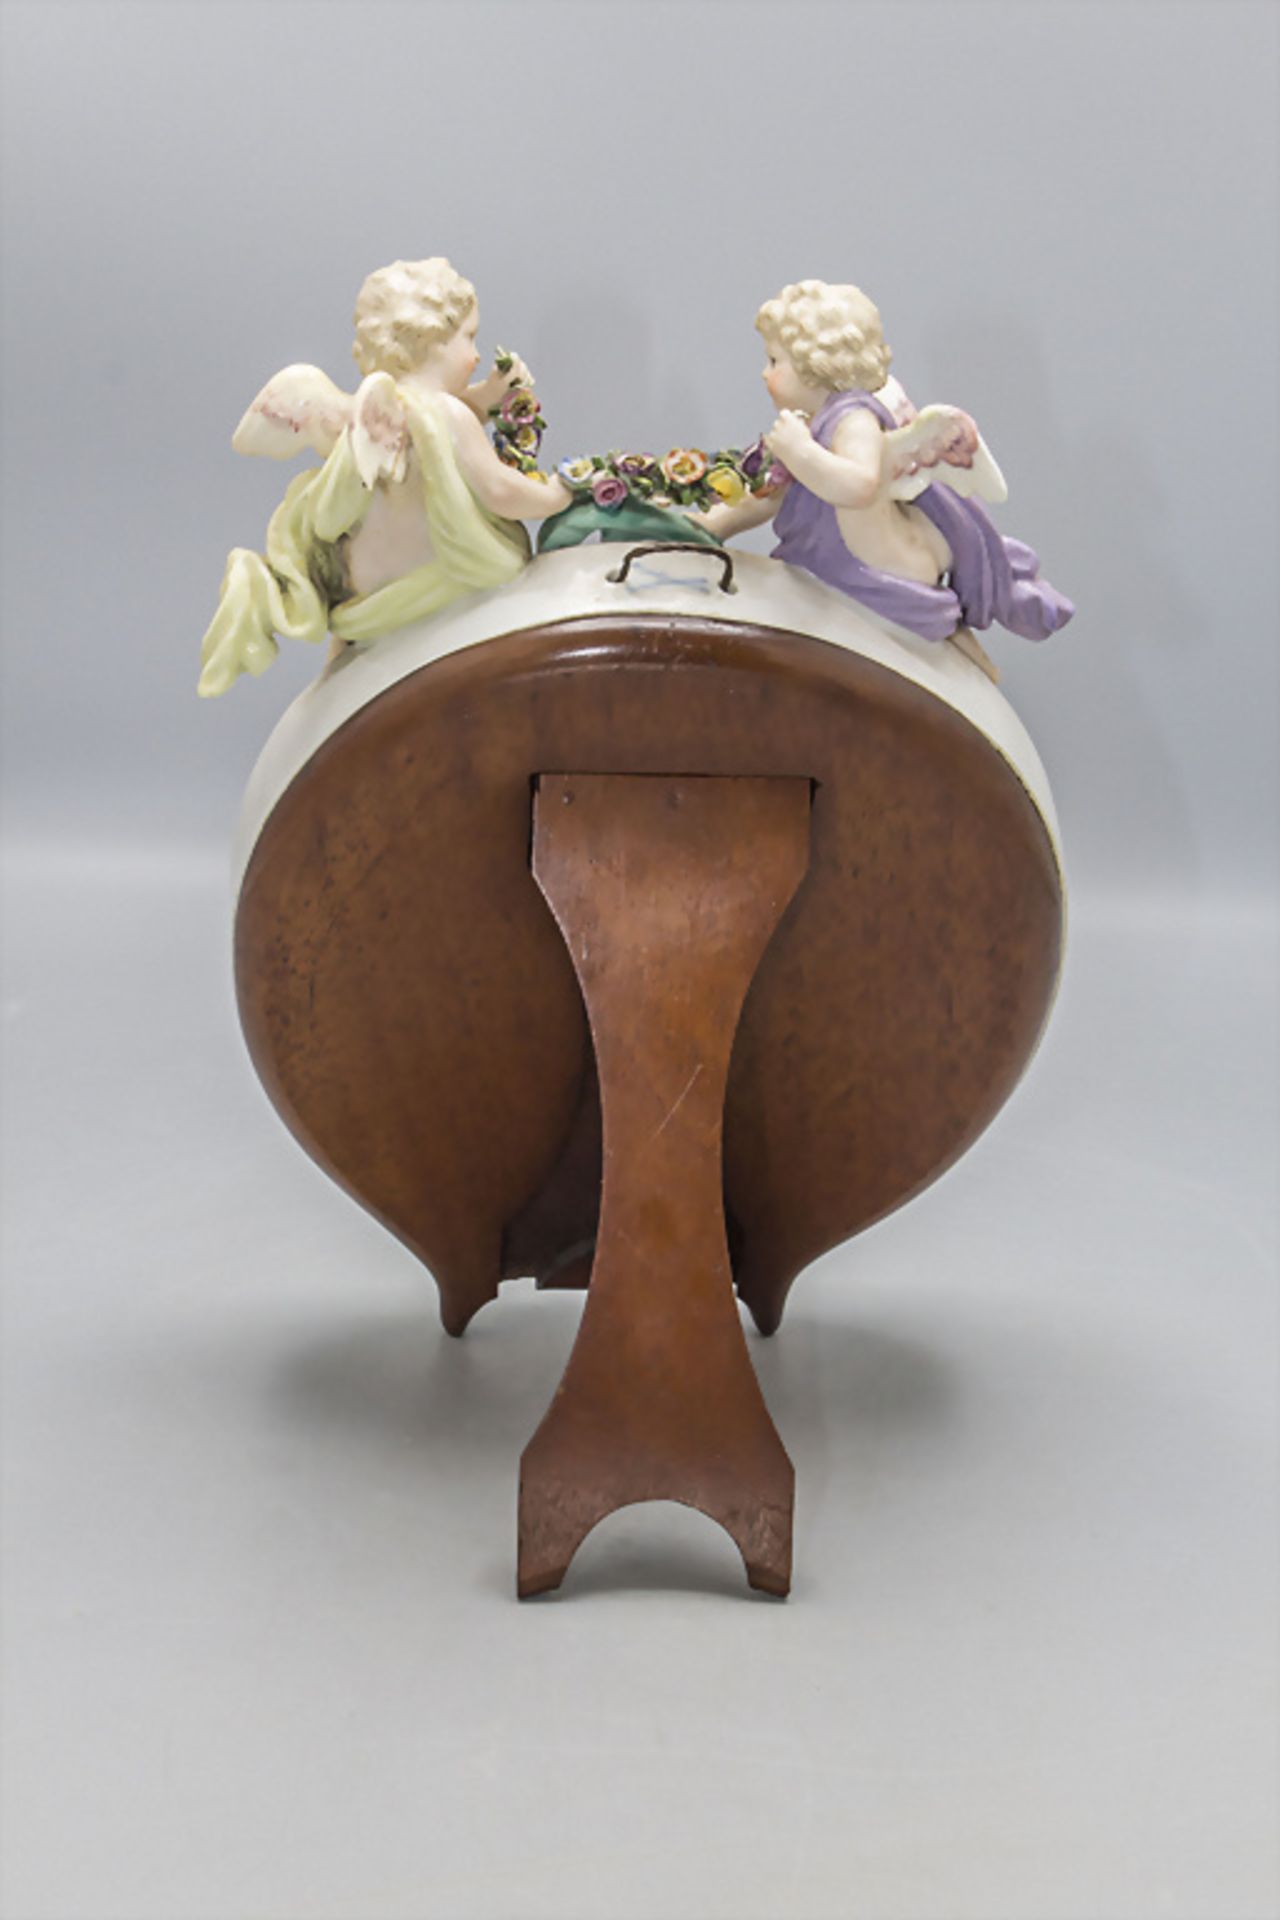 Ovaler Tischspiegel mit 2 Putten / An oval mirror with 2 cherubs, Meissen, Mitte 19. Jh. - Bild 4 aus 5